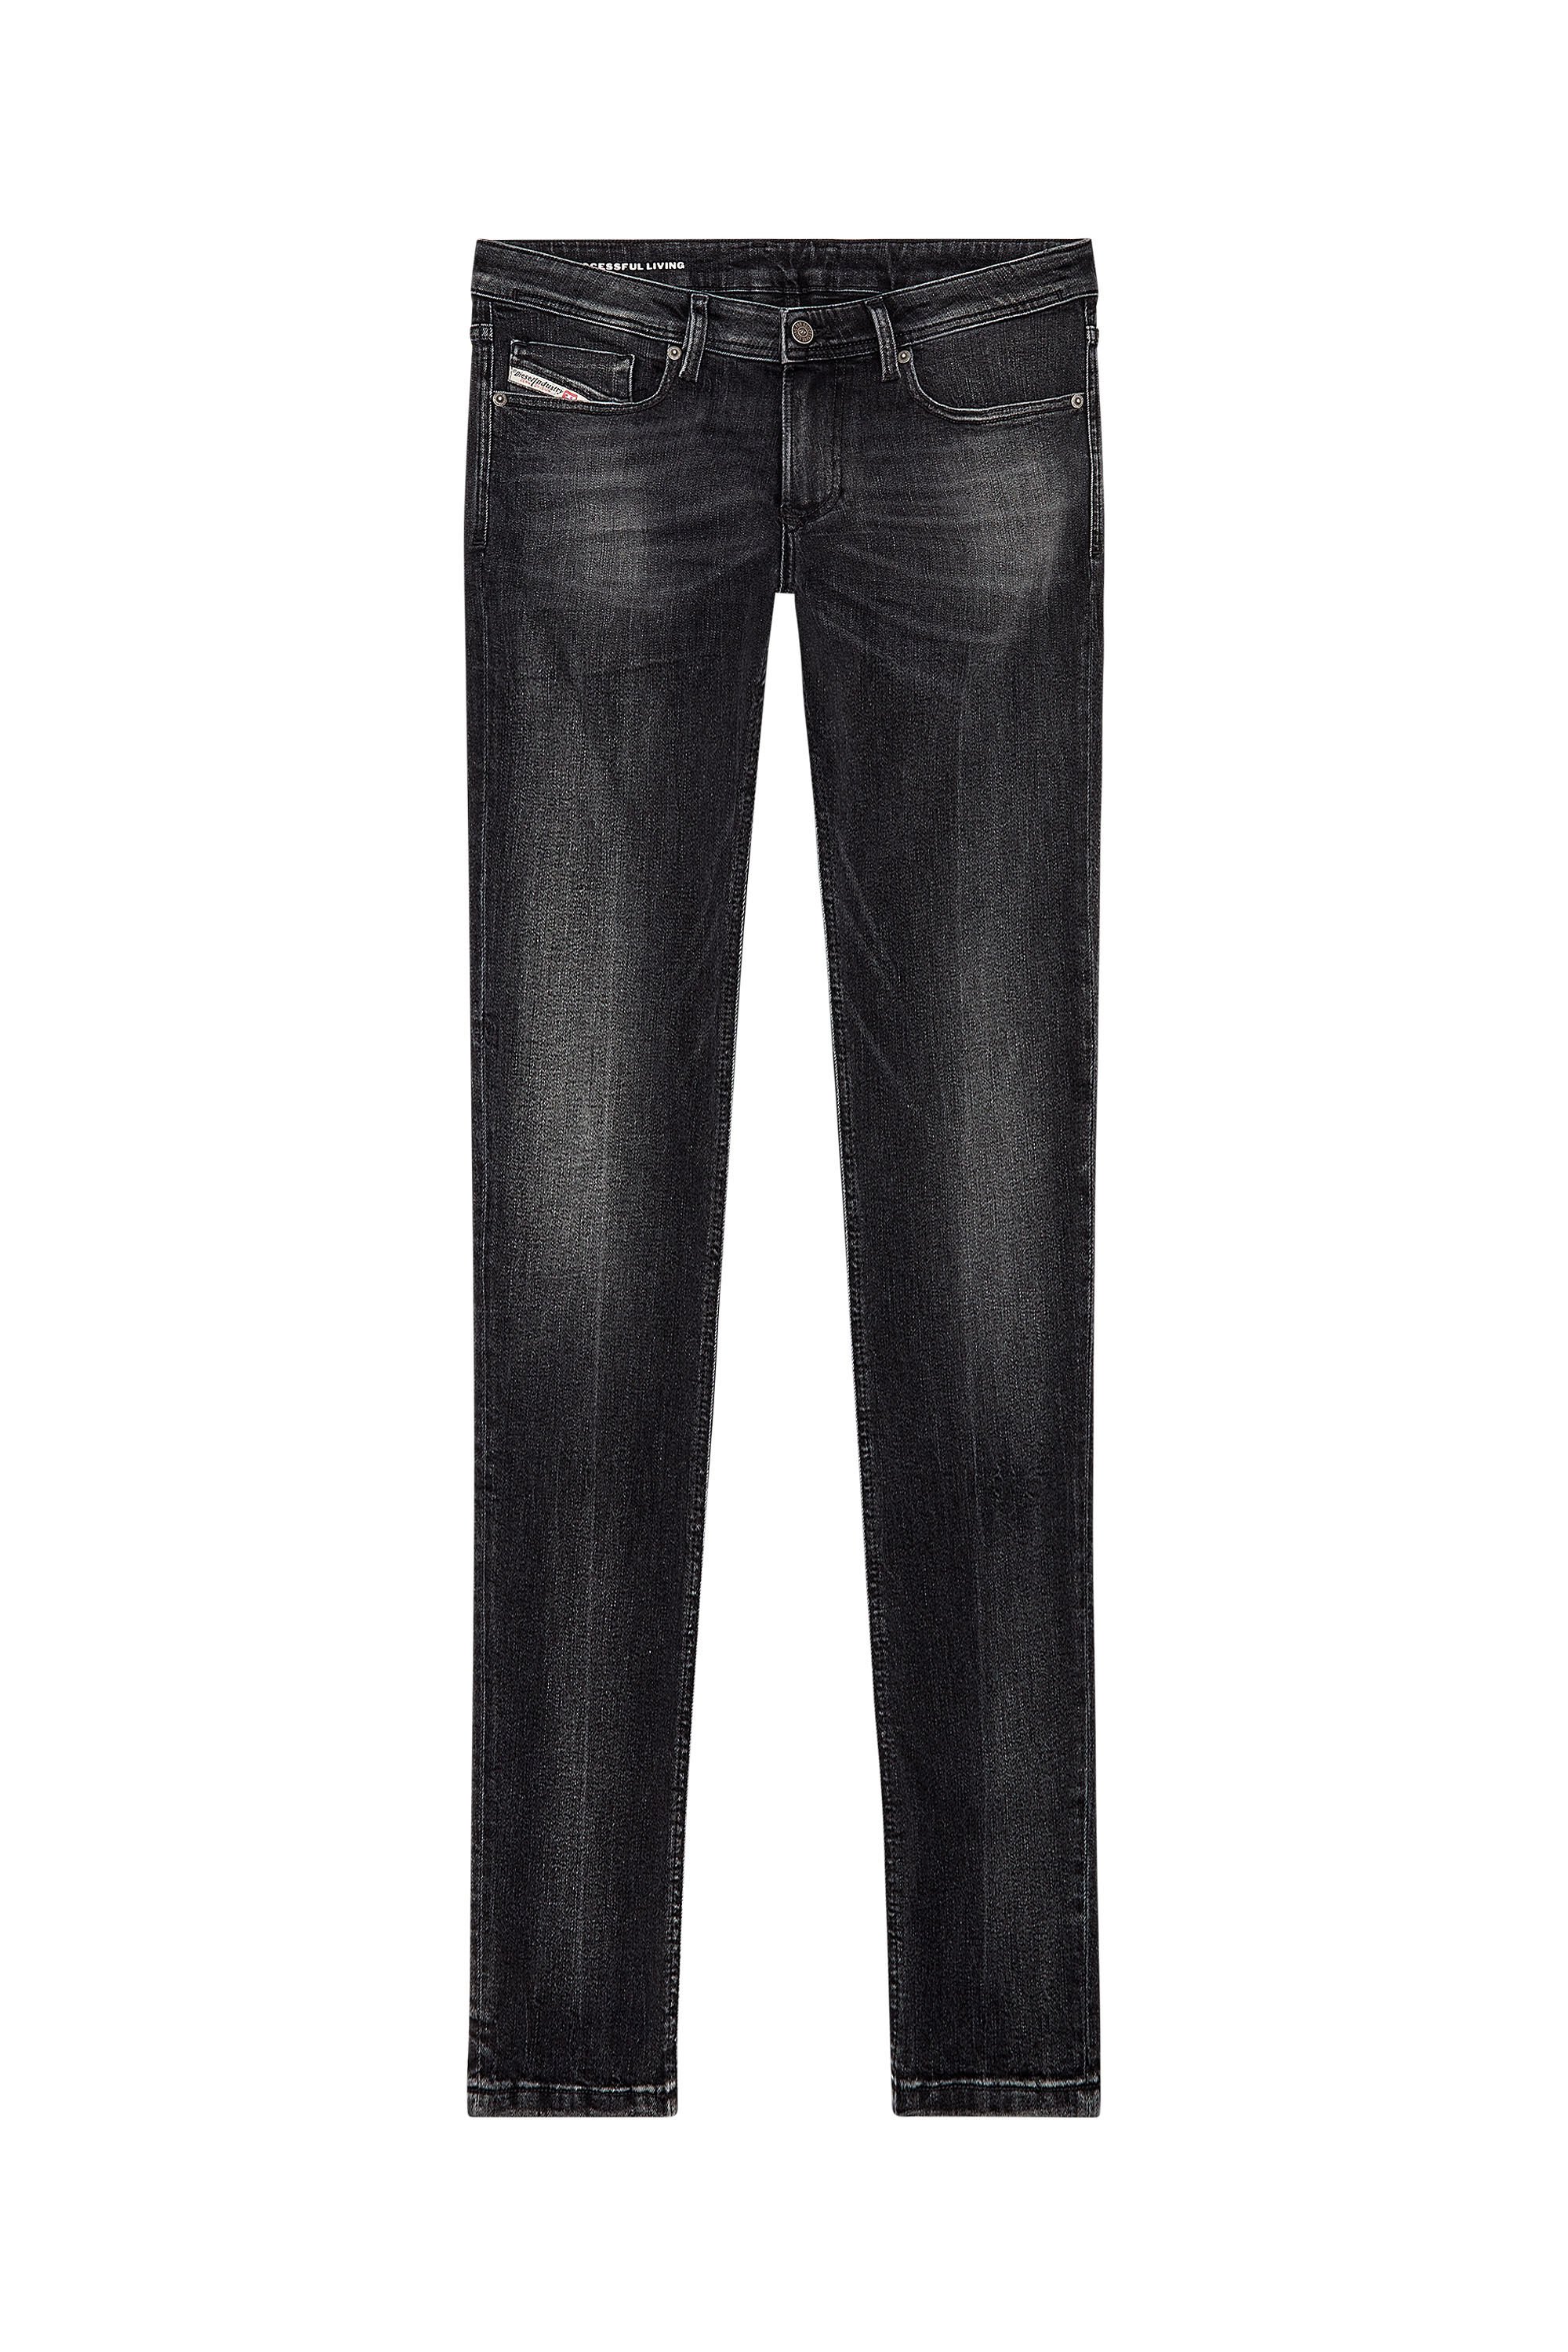 Men\'s Skinny Jeans | Black/Dark grey | Diesel 1979 Sleenker